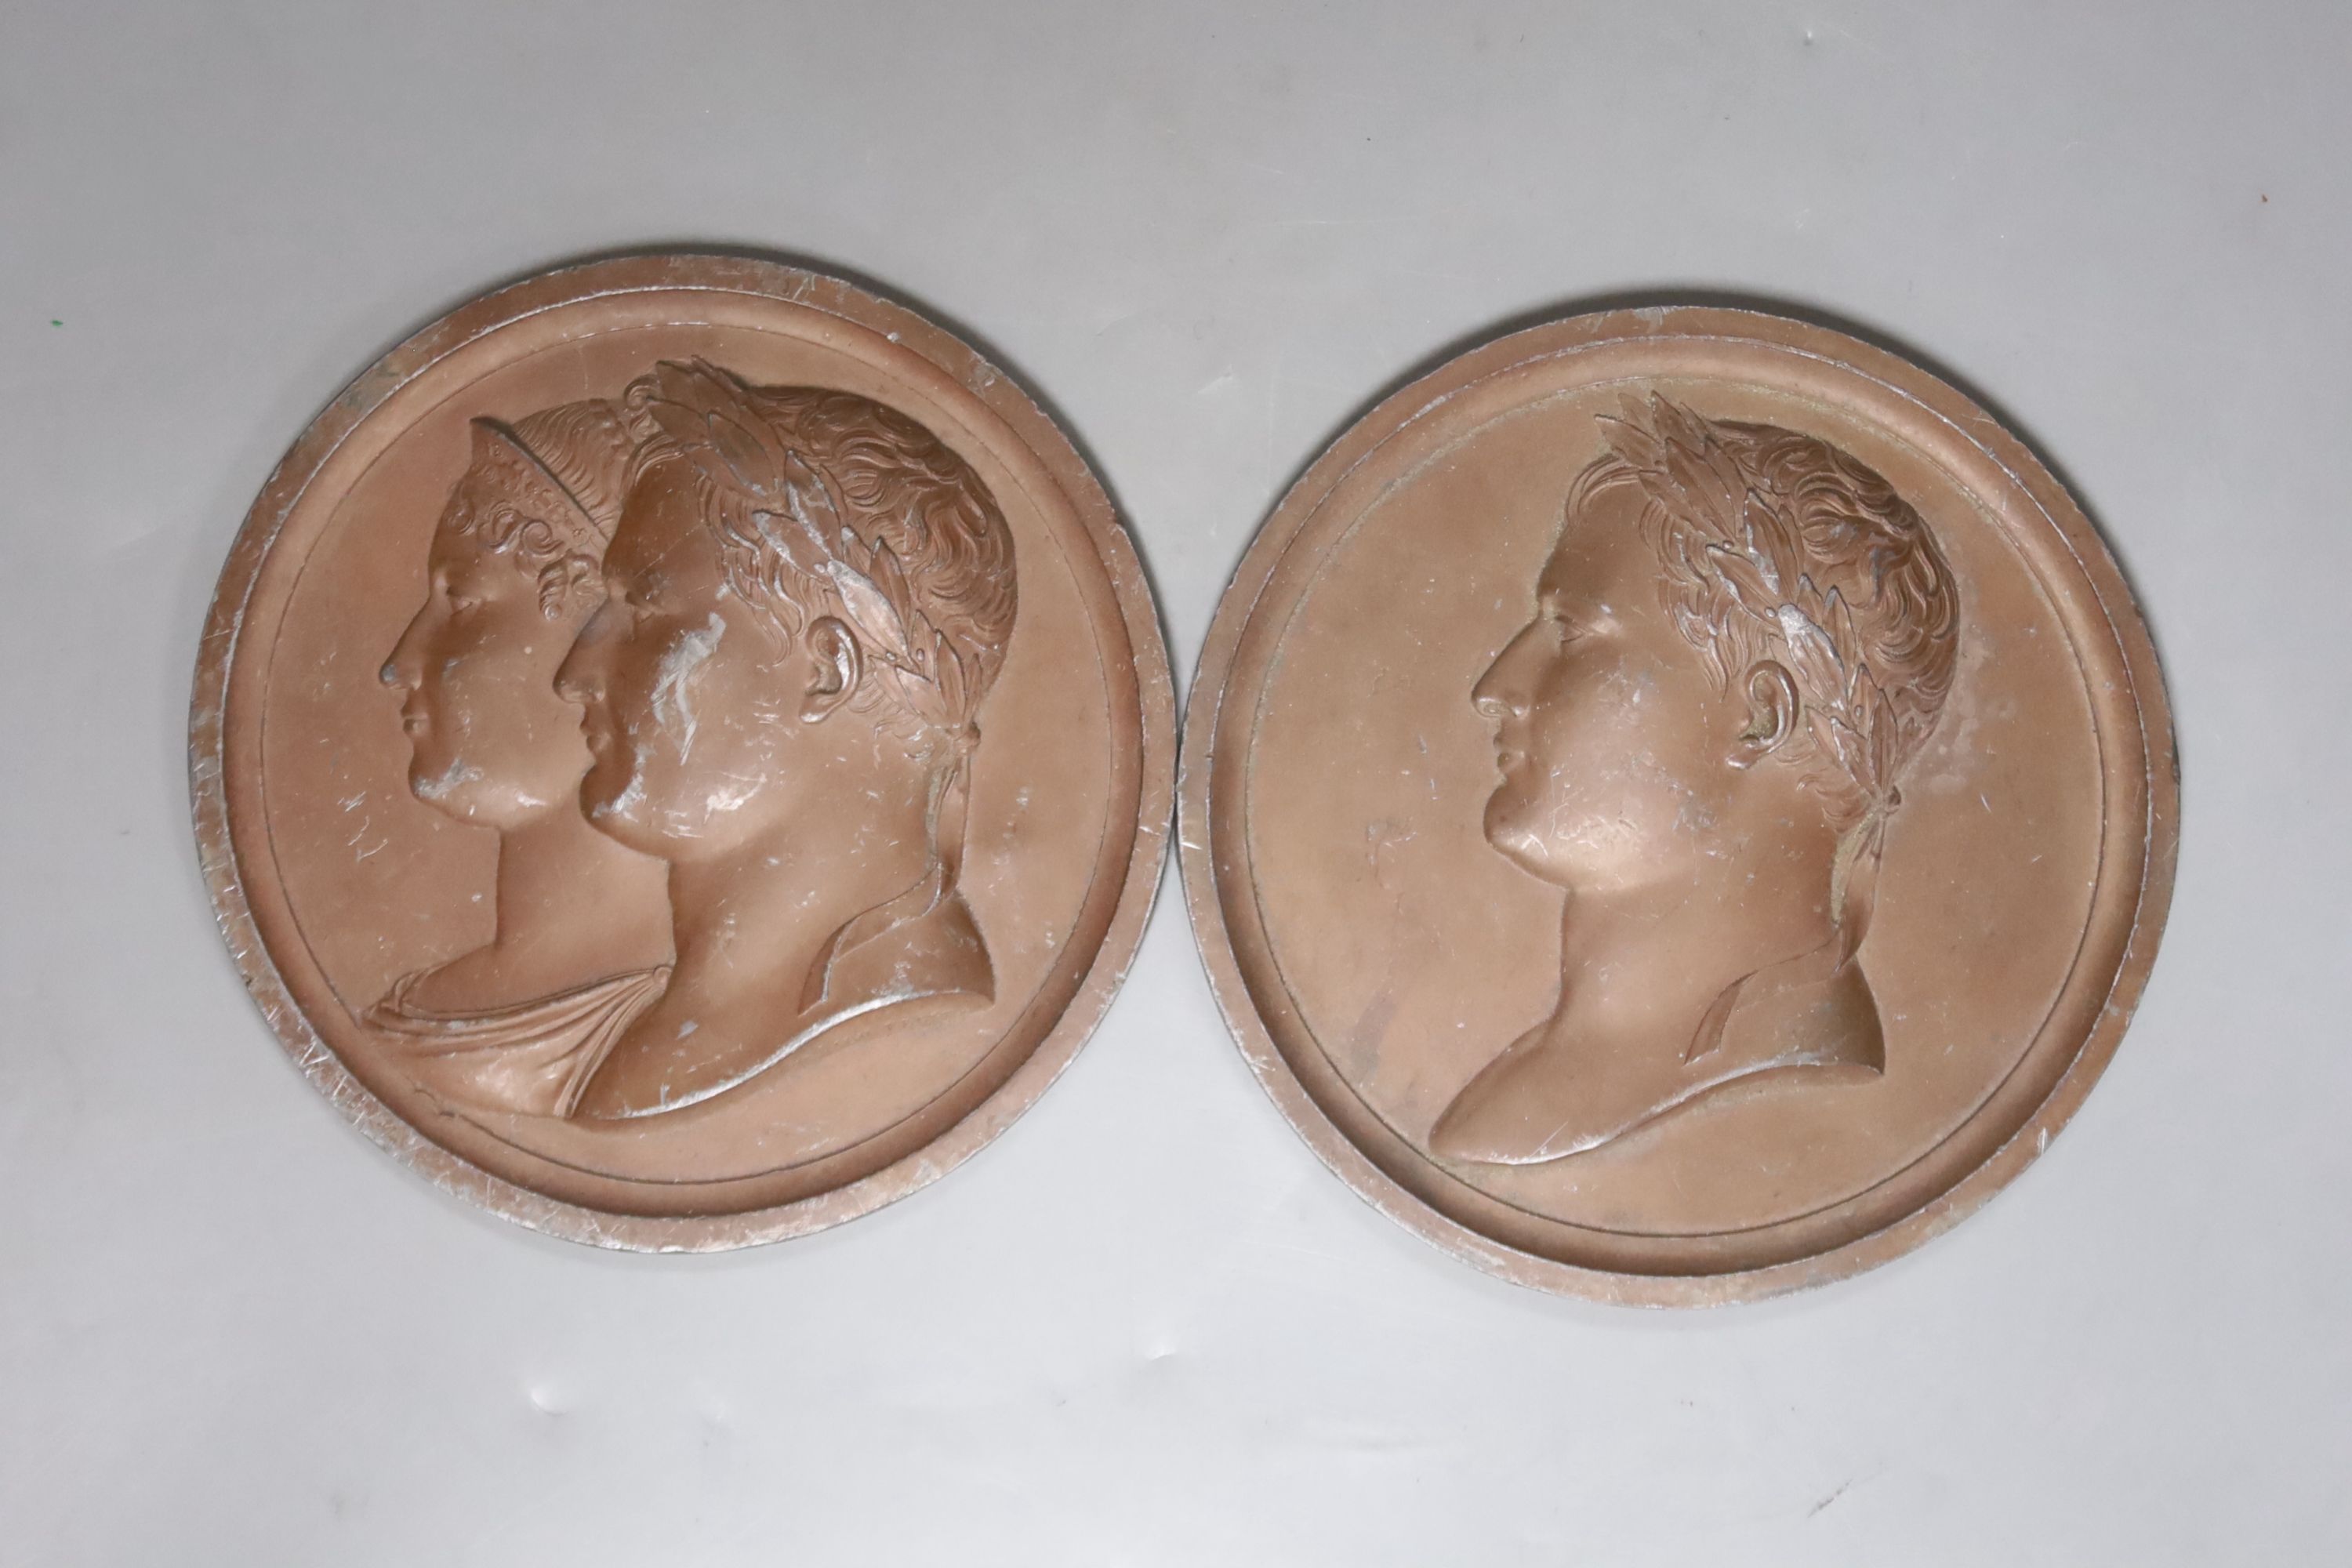 Two bronzed zinc alloy Napoleon portrait roundels, diameter 14cm